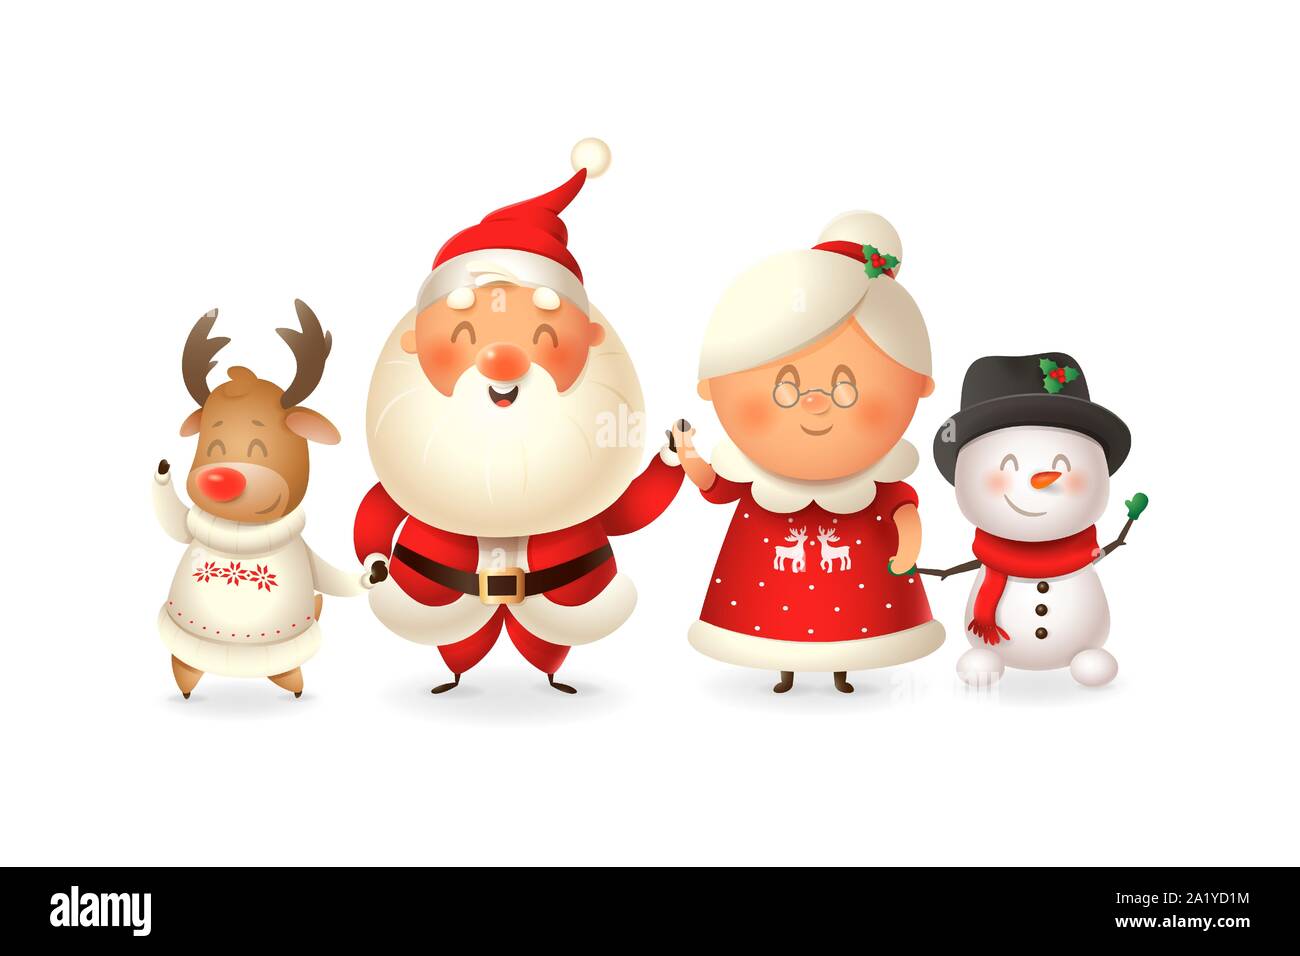 Santa mit der Familie feiern Feiertage - Reinder, Schneemann und Frau Claus-Vector Illustration auf transparentem Hintergrund isoliert Stock Vektor